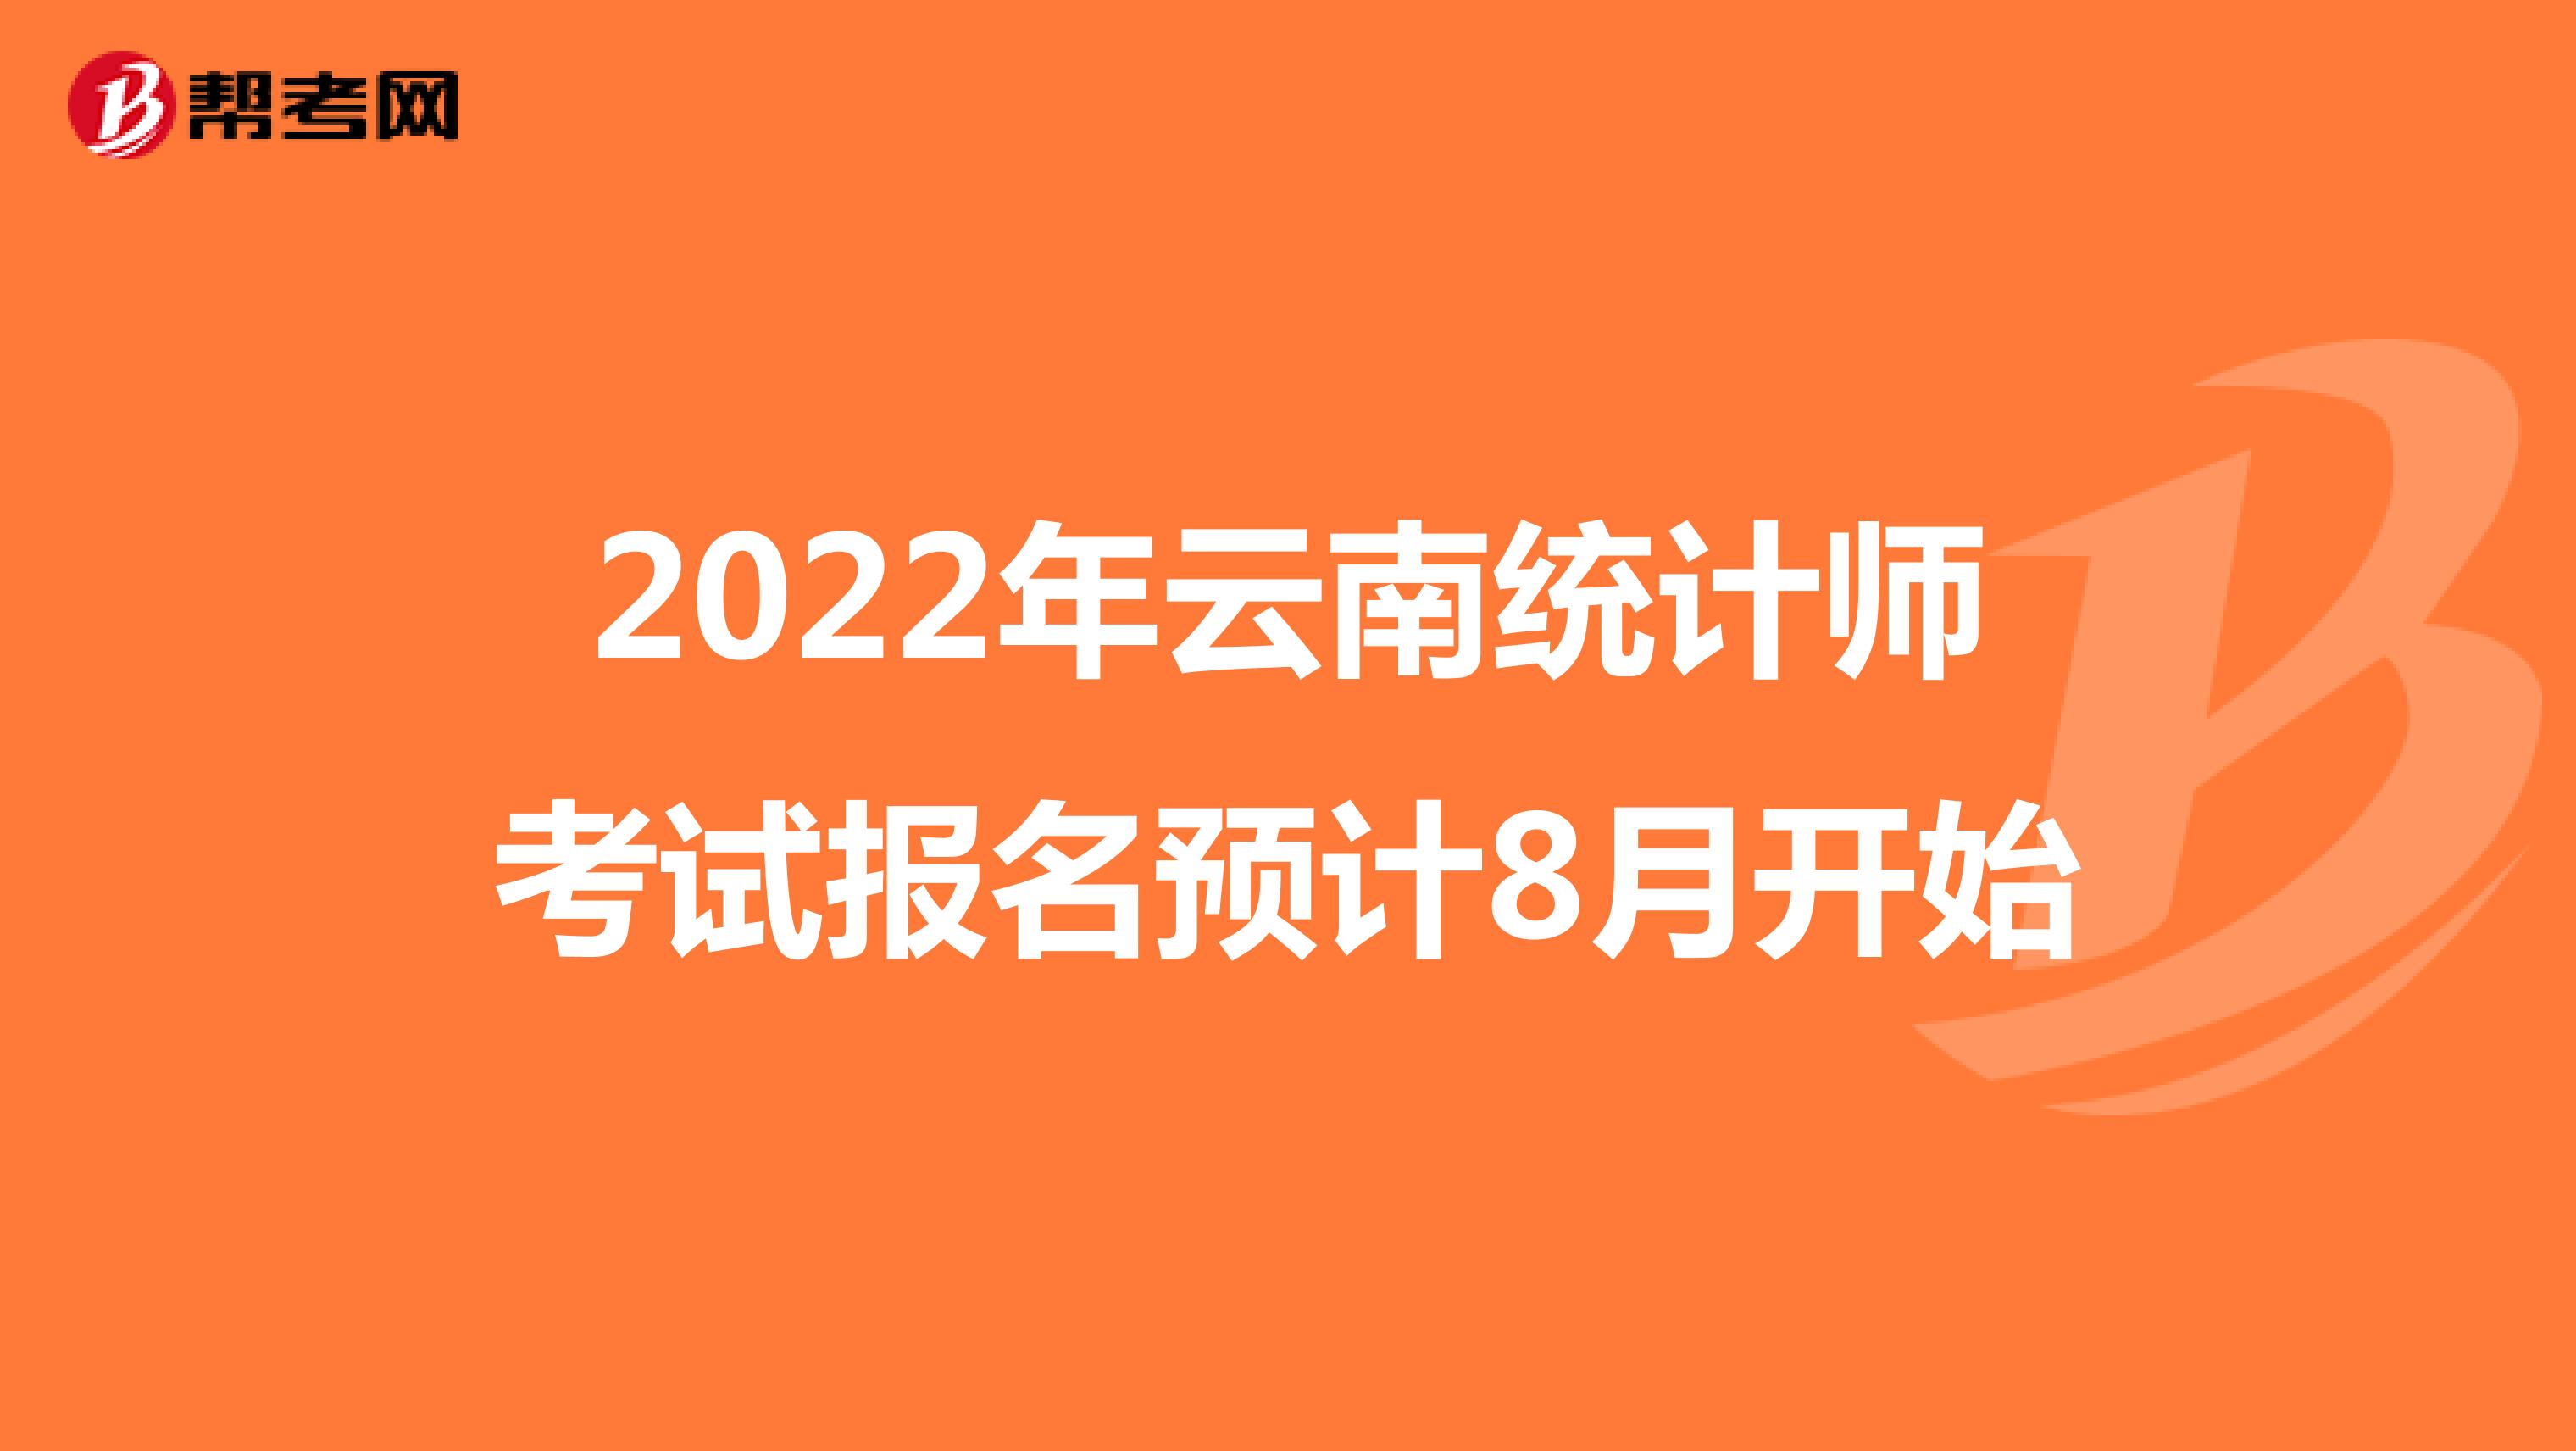 2022年云南统计师考试报名预计8月开始